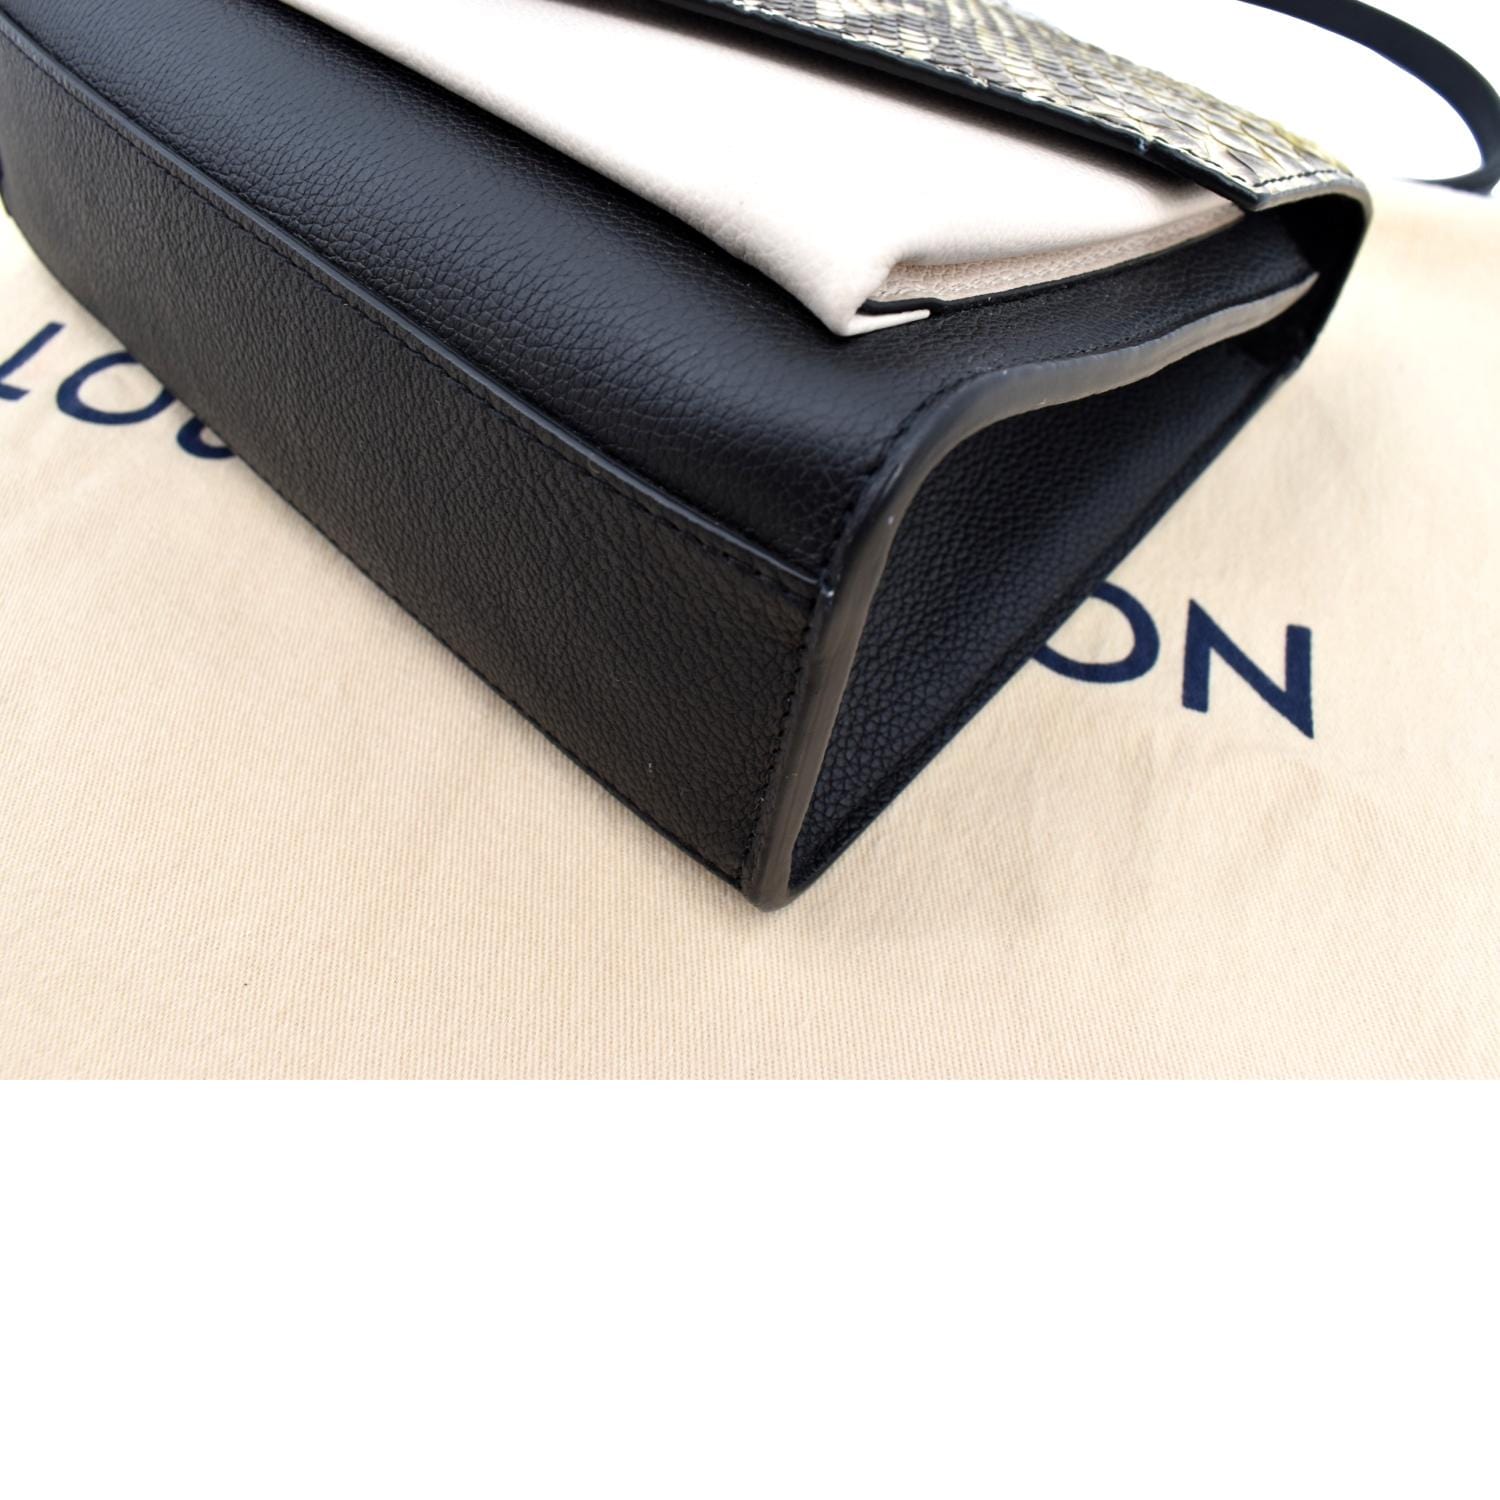 Louis Vuitton Monogram Python Zippy Wallet